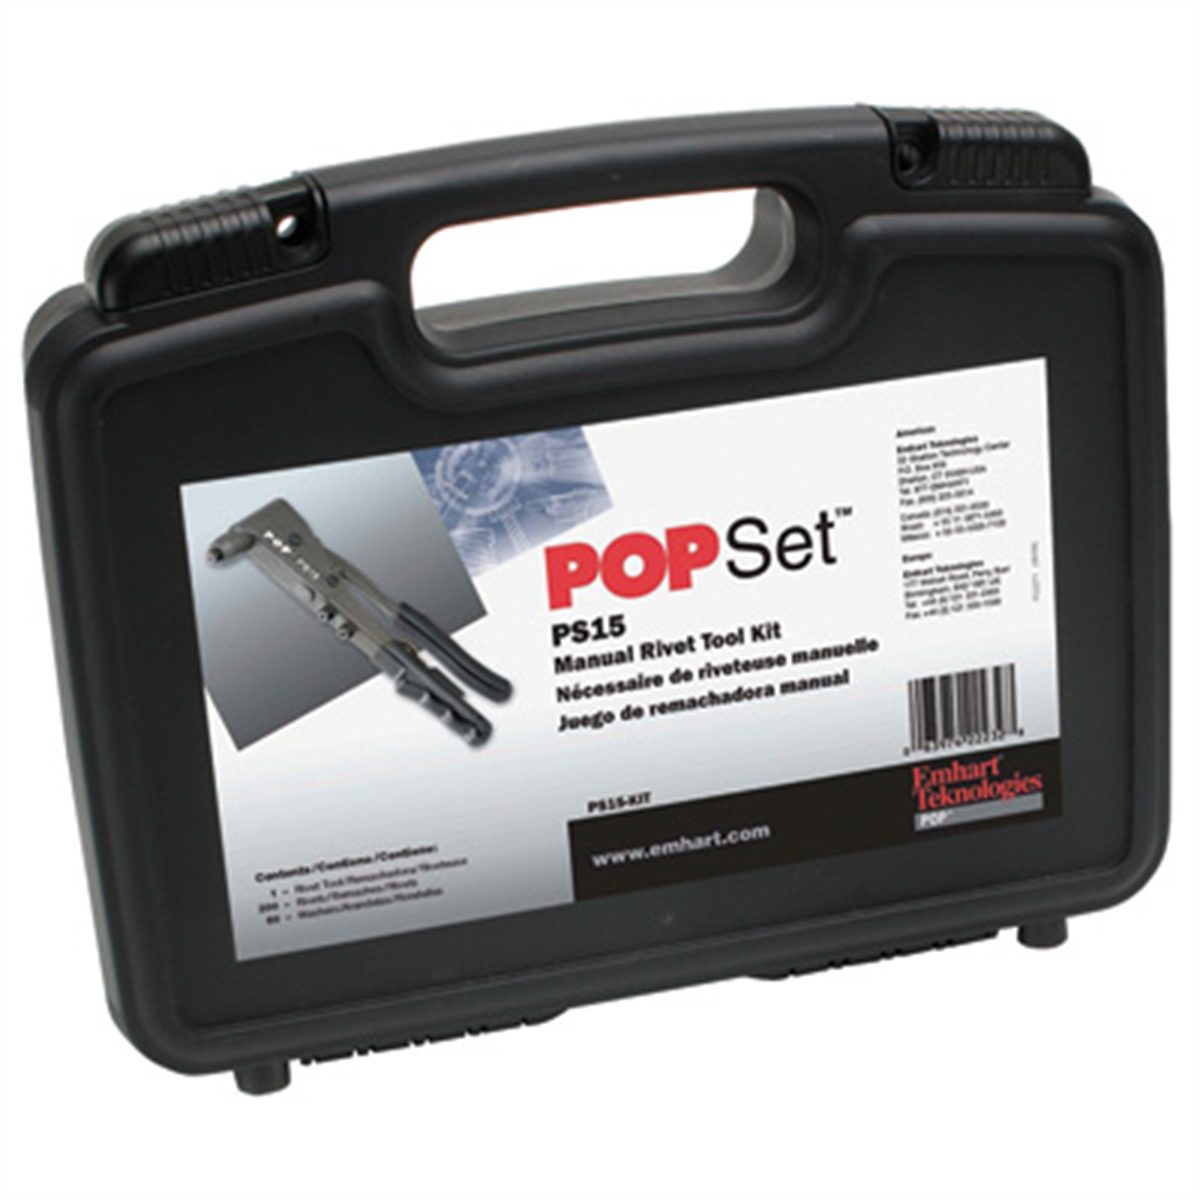 POPSet Professional Manual Rivet Tool Kit